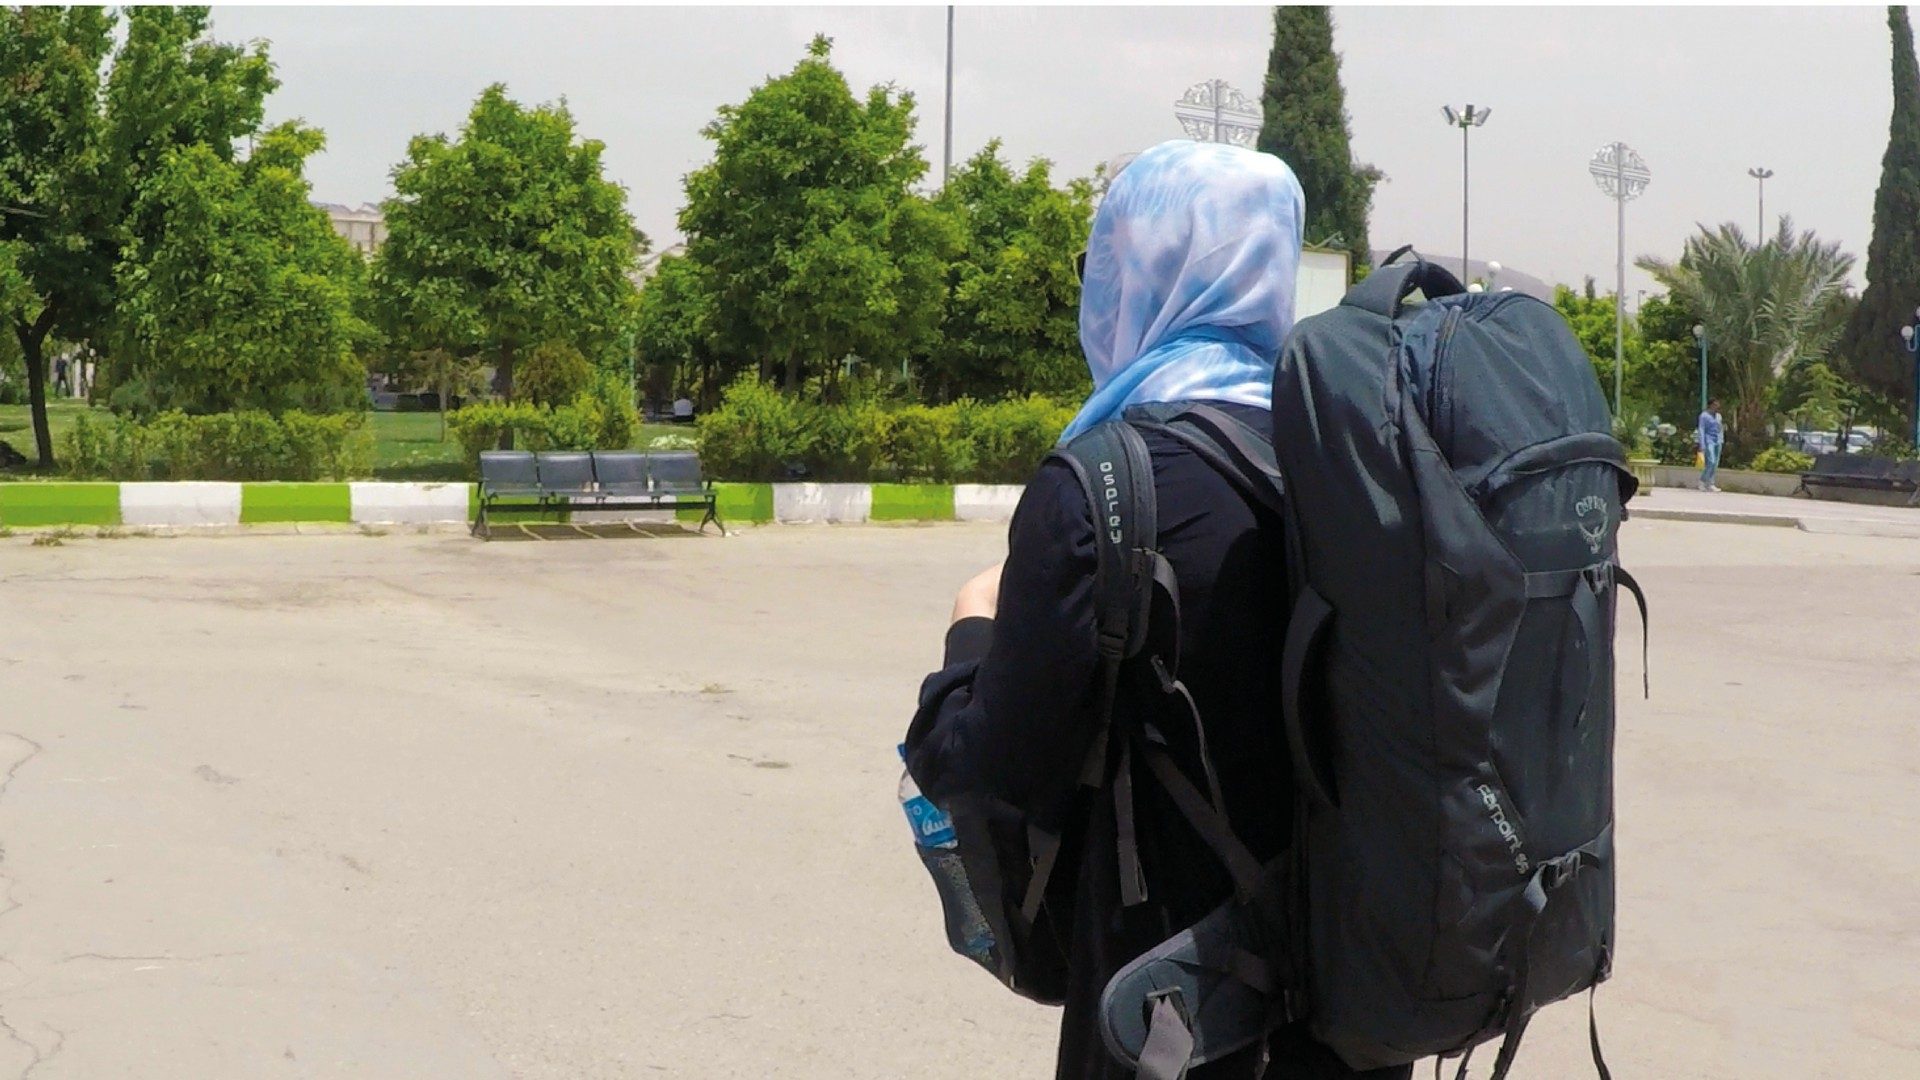 backpacken in iran solo